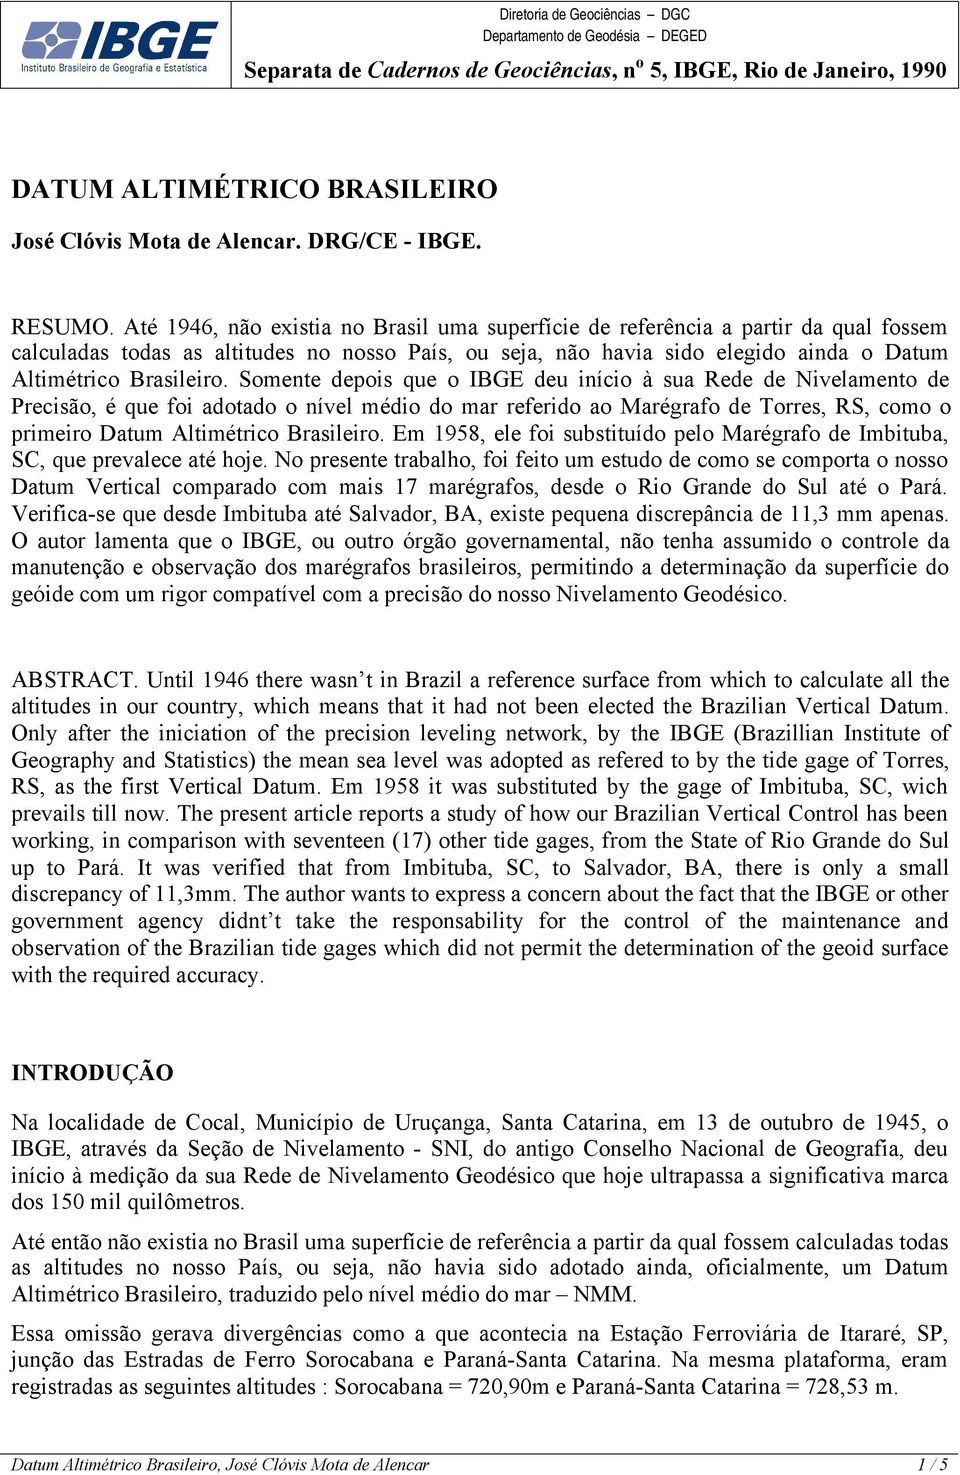 Somente depois que o IBGE deu início à sua Rede de Nivelamento de Precisão, é que foi adotado o nível médio do mar referido ao Marégrafo de Torres, RS, como o primeiro Datum Altimétrico Brasileiro.